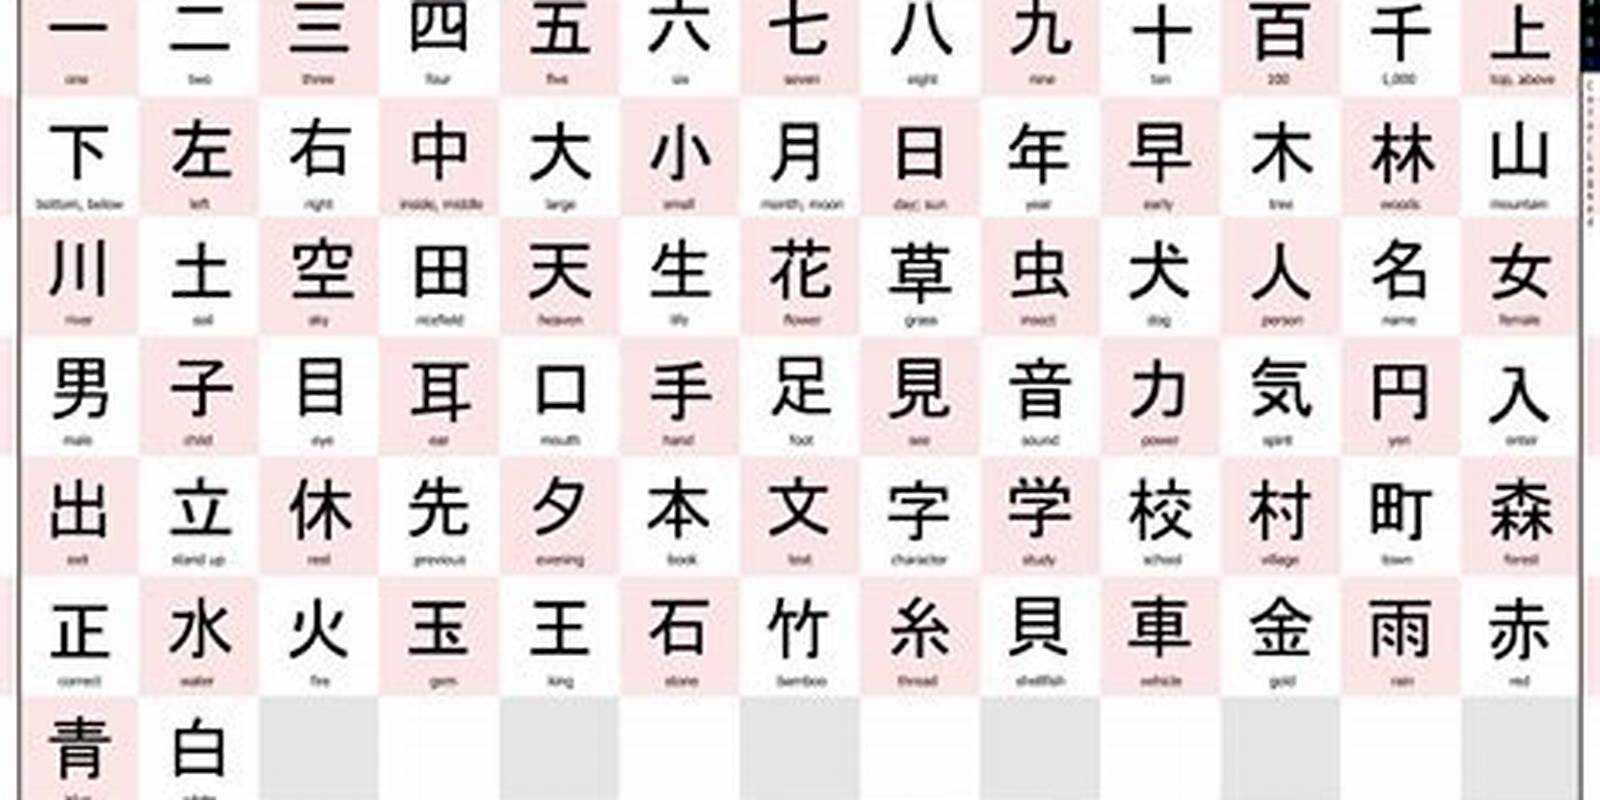 belajar kanji jepang